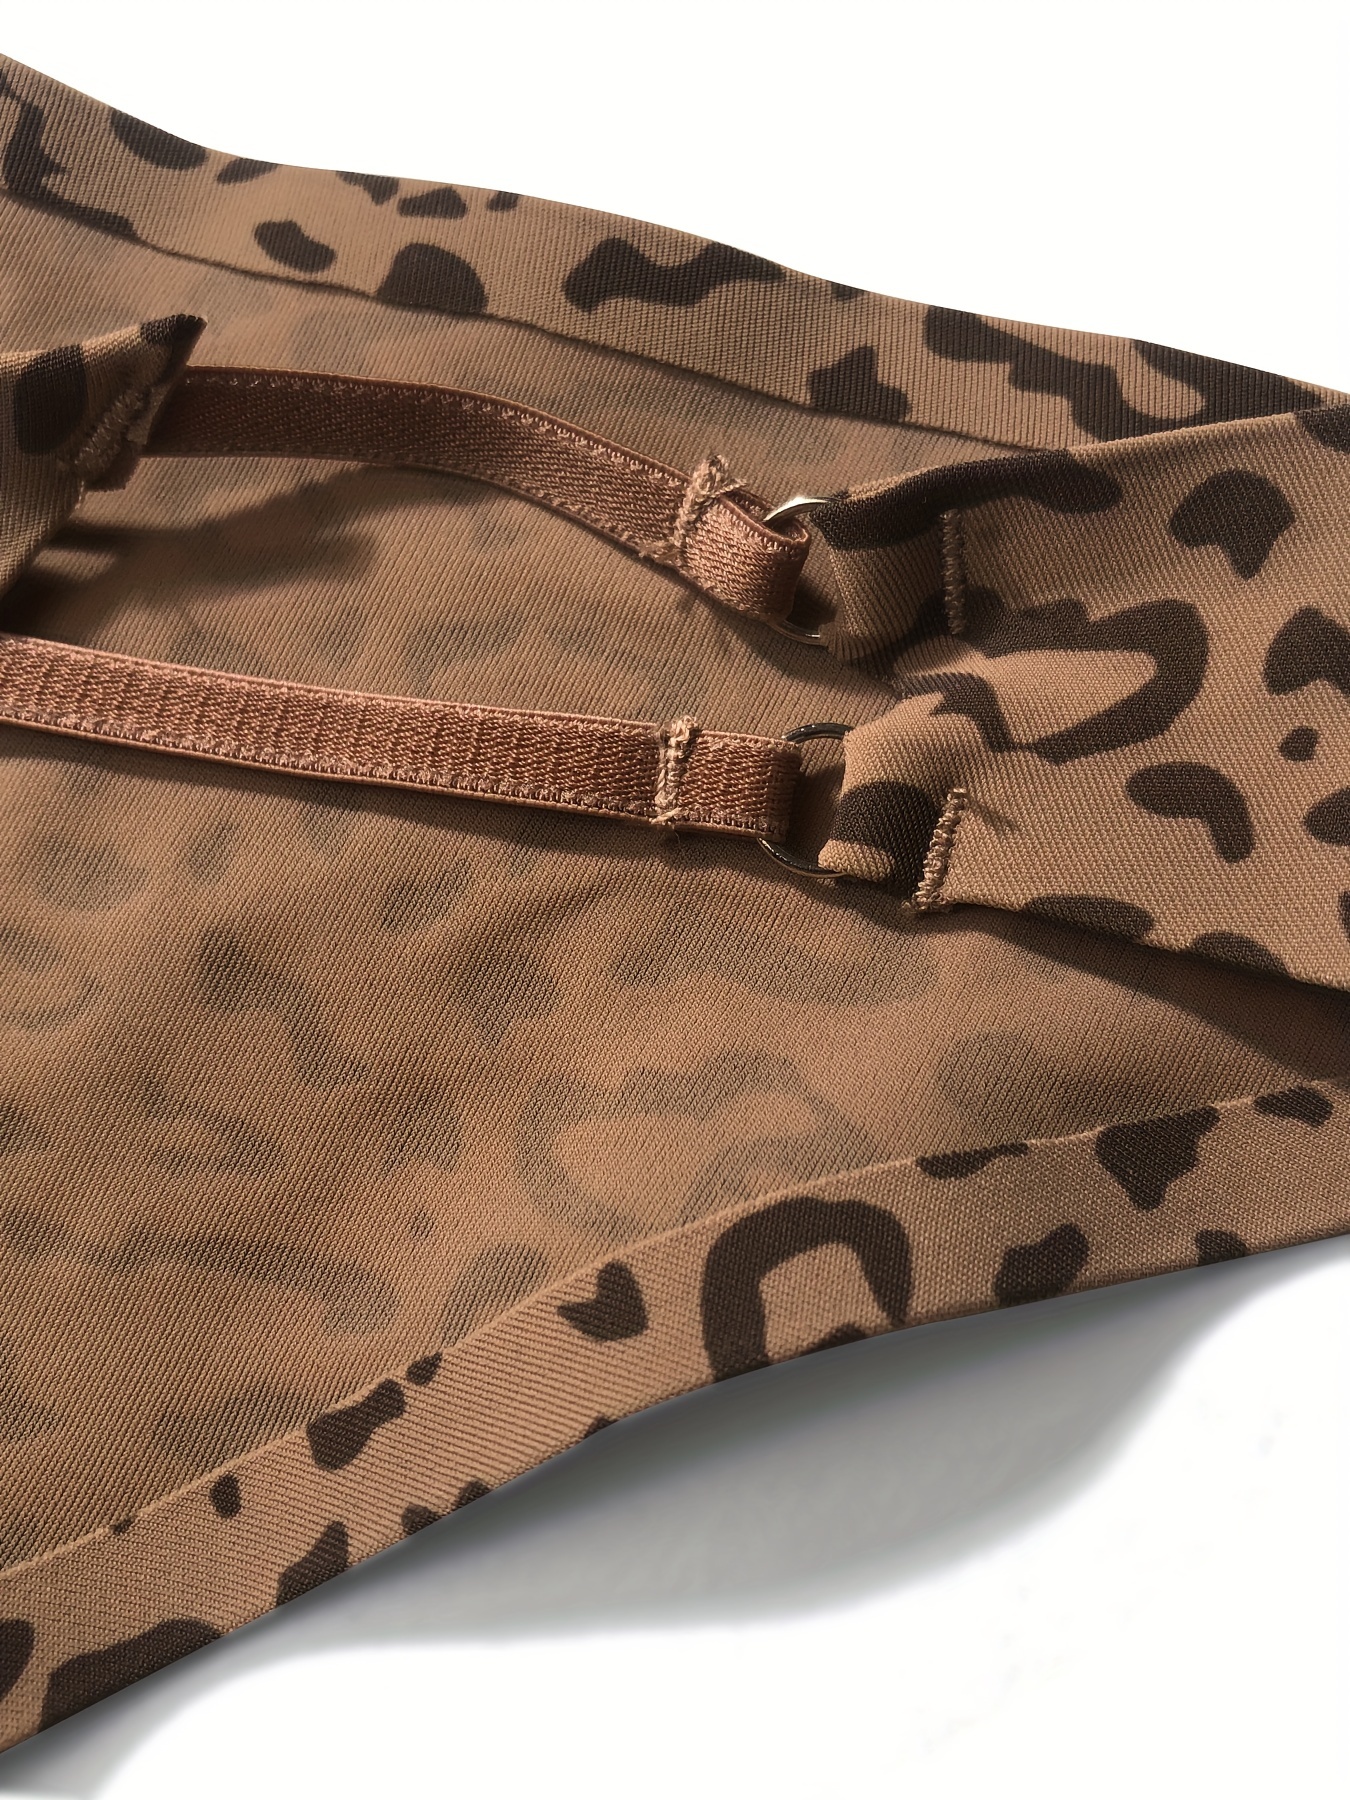 Leopard Print Bra & Panties, Full Coverage Bra & Elastic Panties Lingerie  Set, Women's Lingerie & Underwear